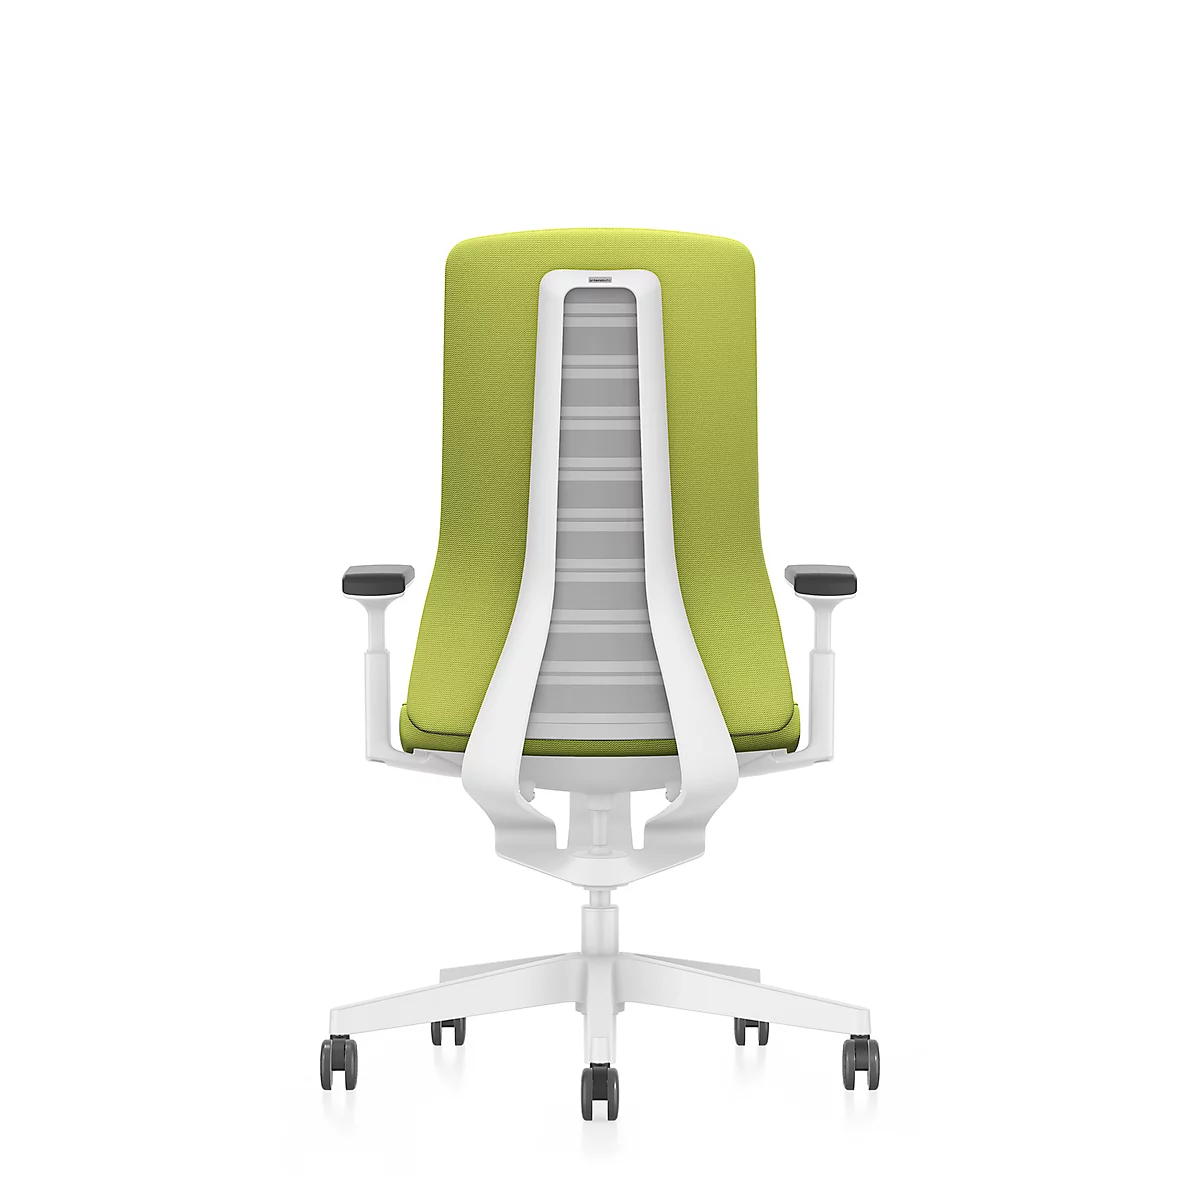 Interstuhl Bürostuhl PUREis3, verstellbare Armlehnen, 3D-Auto-Synchronmechanik, Muldensitz, Polster-Netzrücken, maigrün/weiß